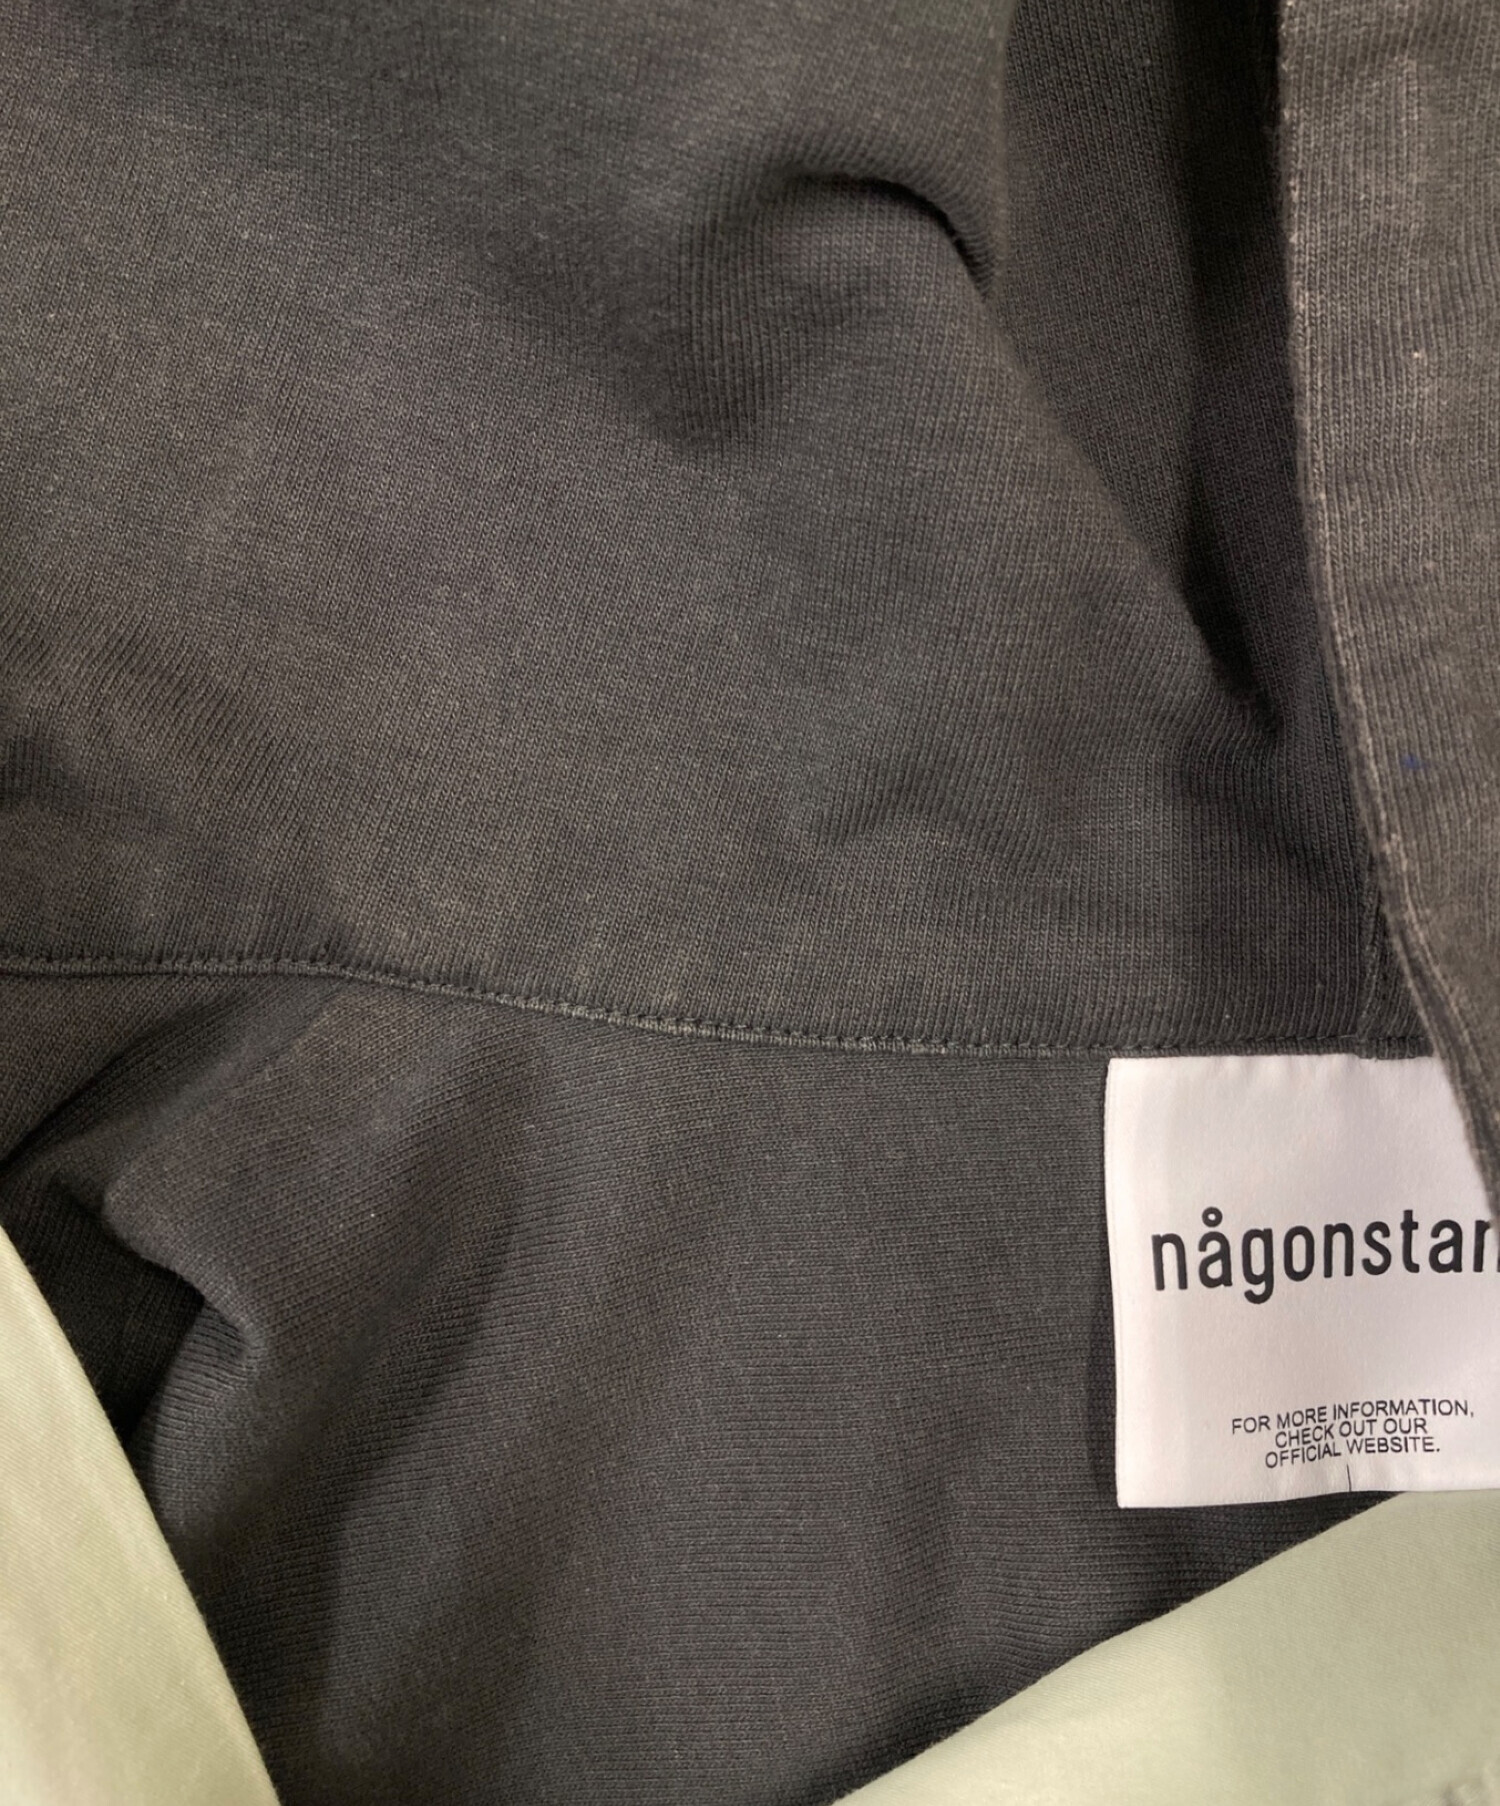 nagonstans (ナゴンスタンス) Coギャバ combination shirts ライトグリーン サイズ:M